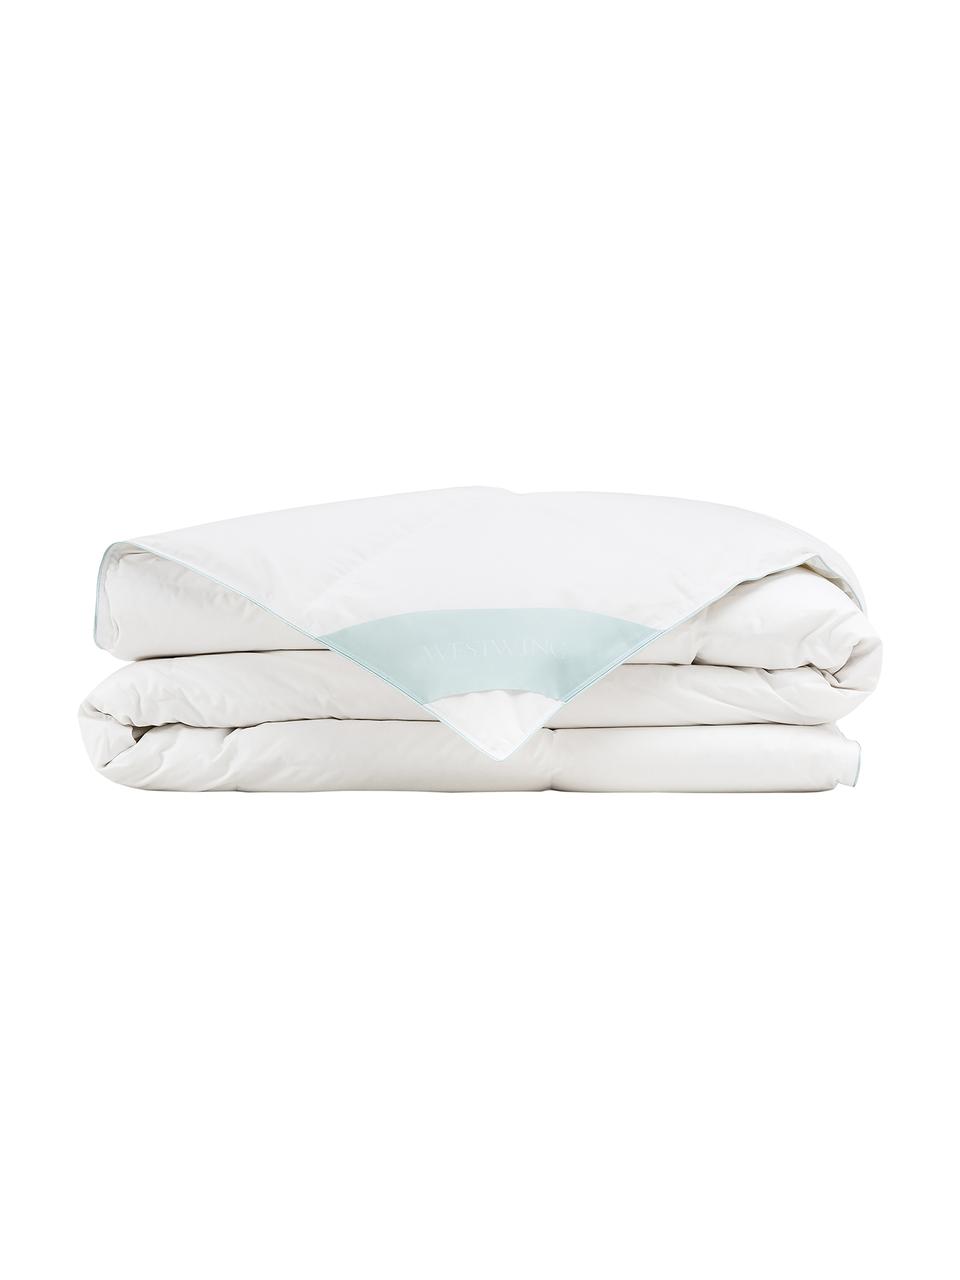 Daunen-Bettdecke Comfort, leicht, Hülle: 100% Baumwolle, feine Mak, leicht, 135 x 200 cm